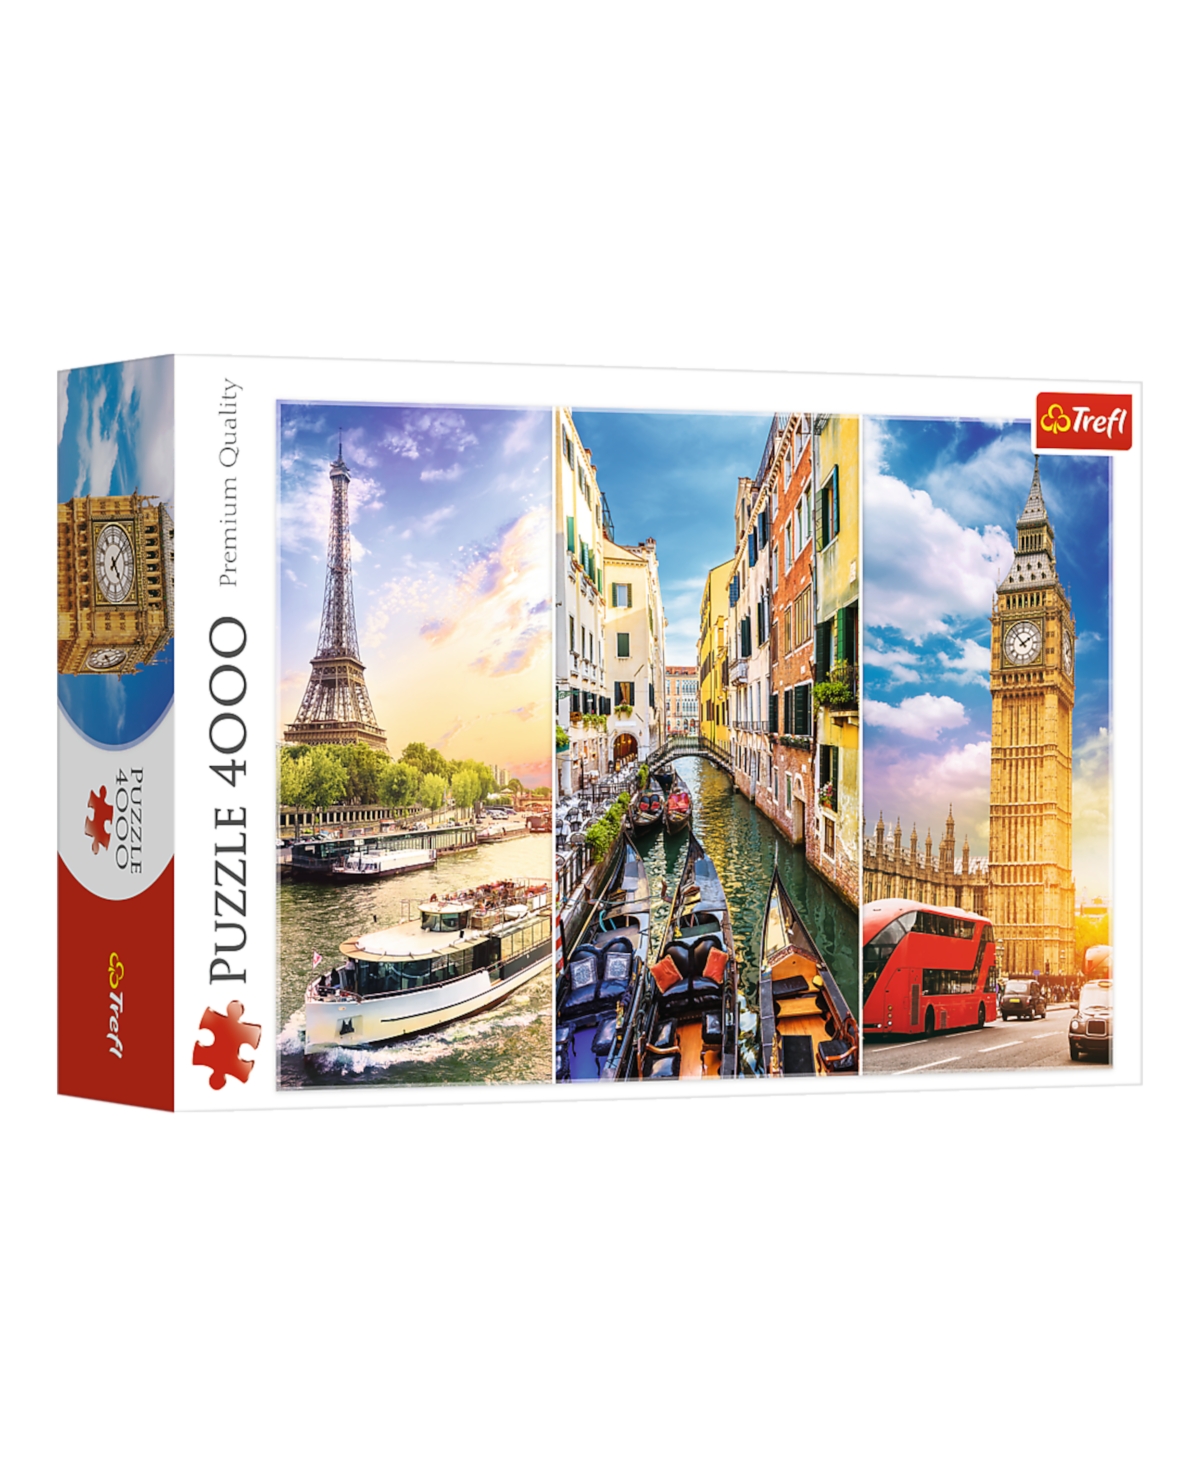 Trefl Kids' Red 4000 Piece Puzzle- Trip Around Europe In Multi